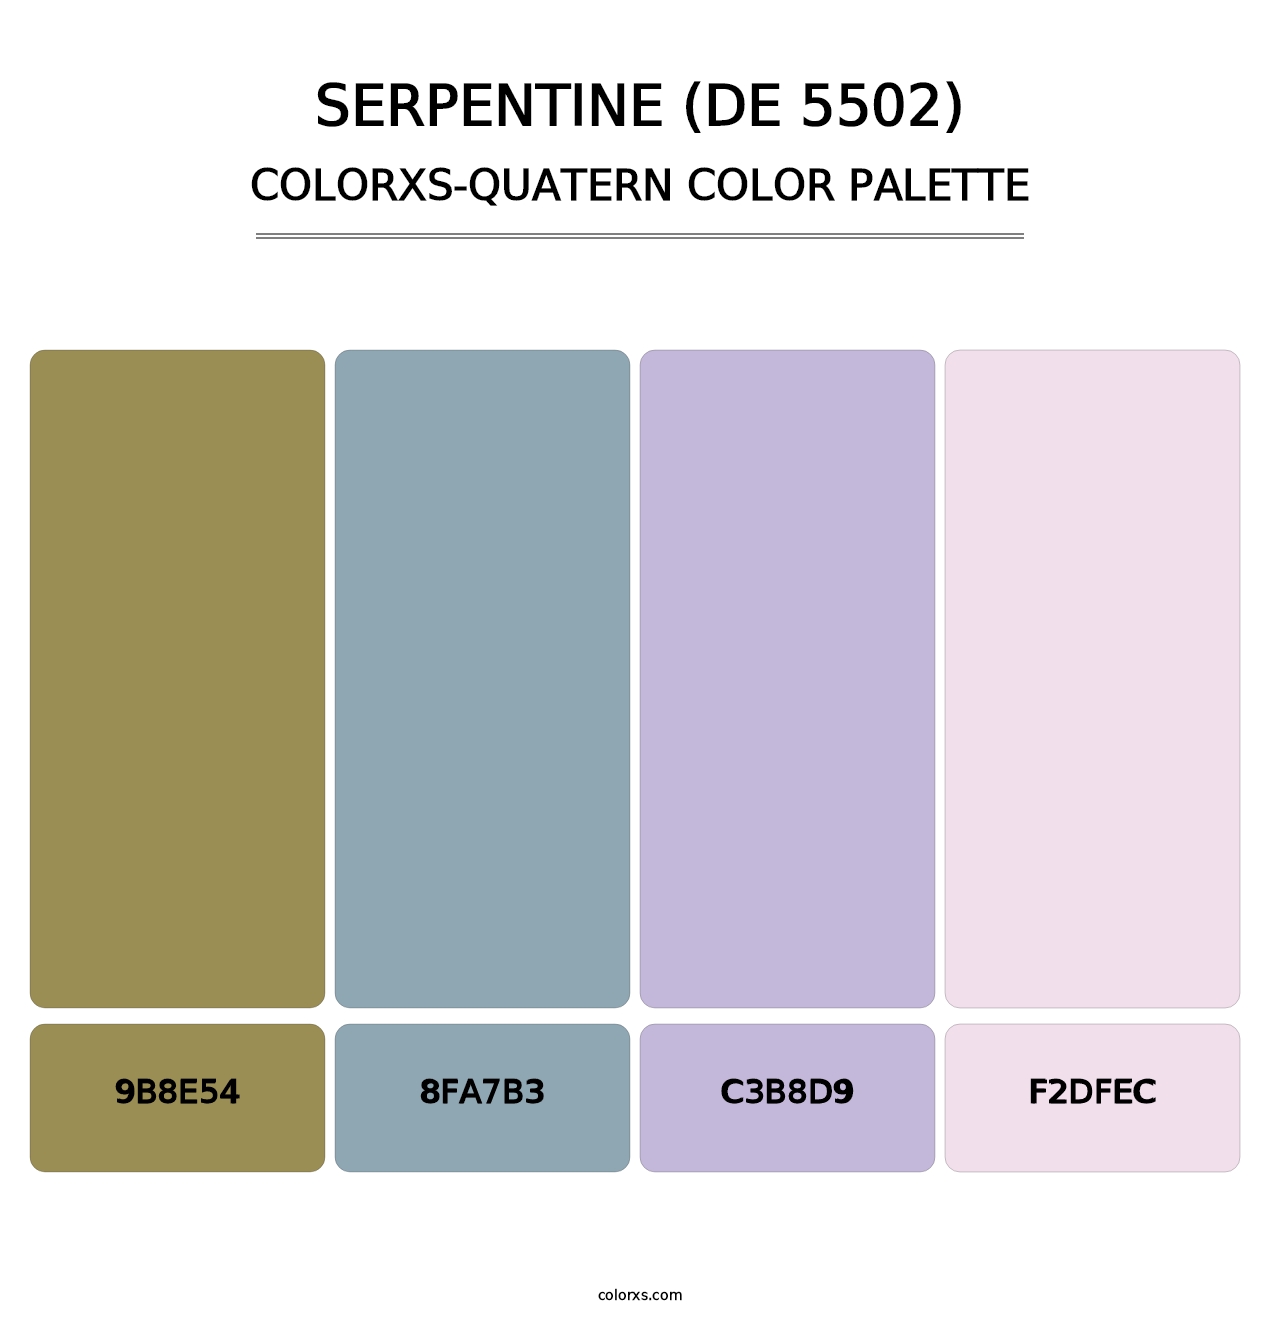 Serpentine (DE 5502) - Colorxs Quatern Palette